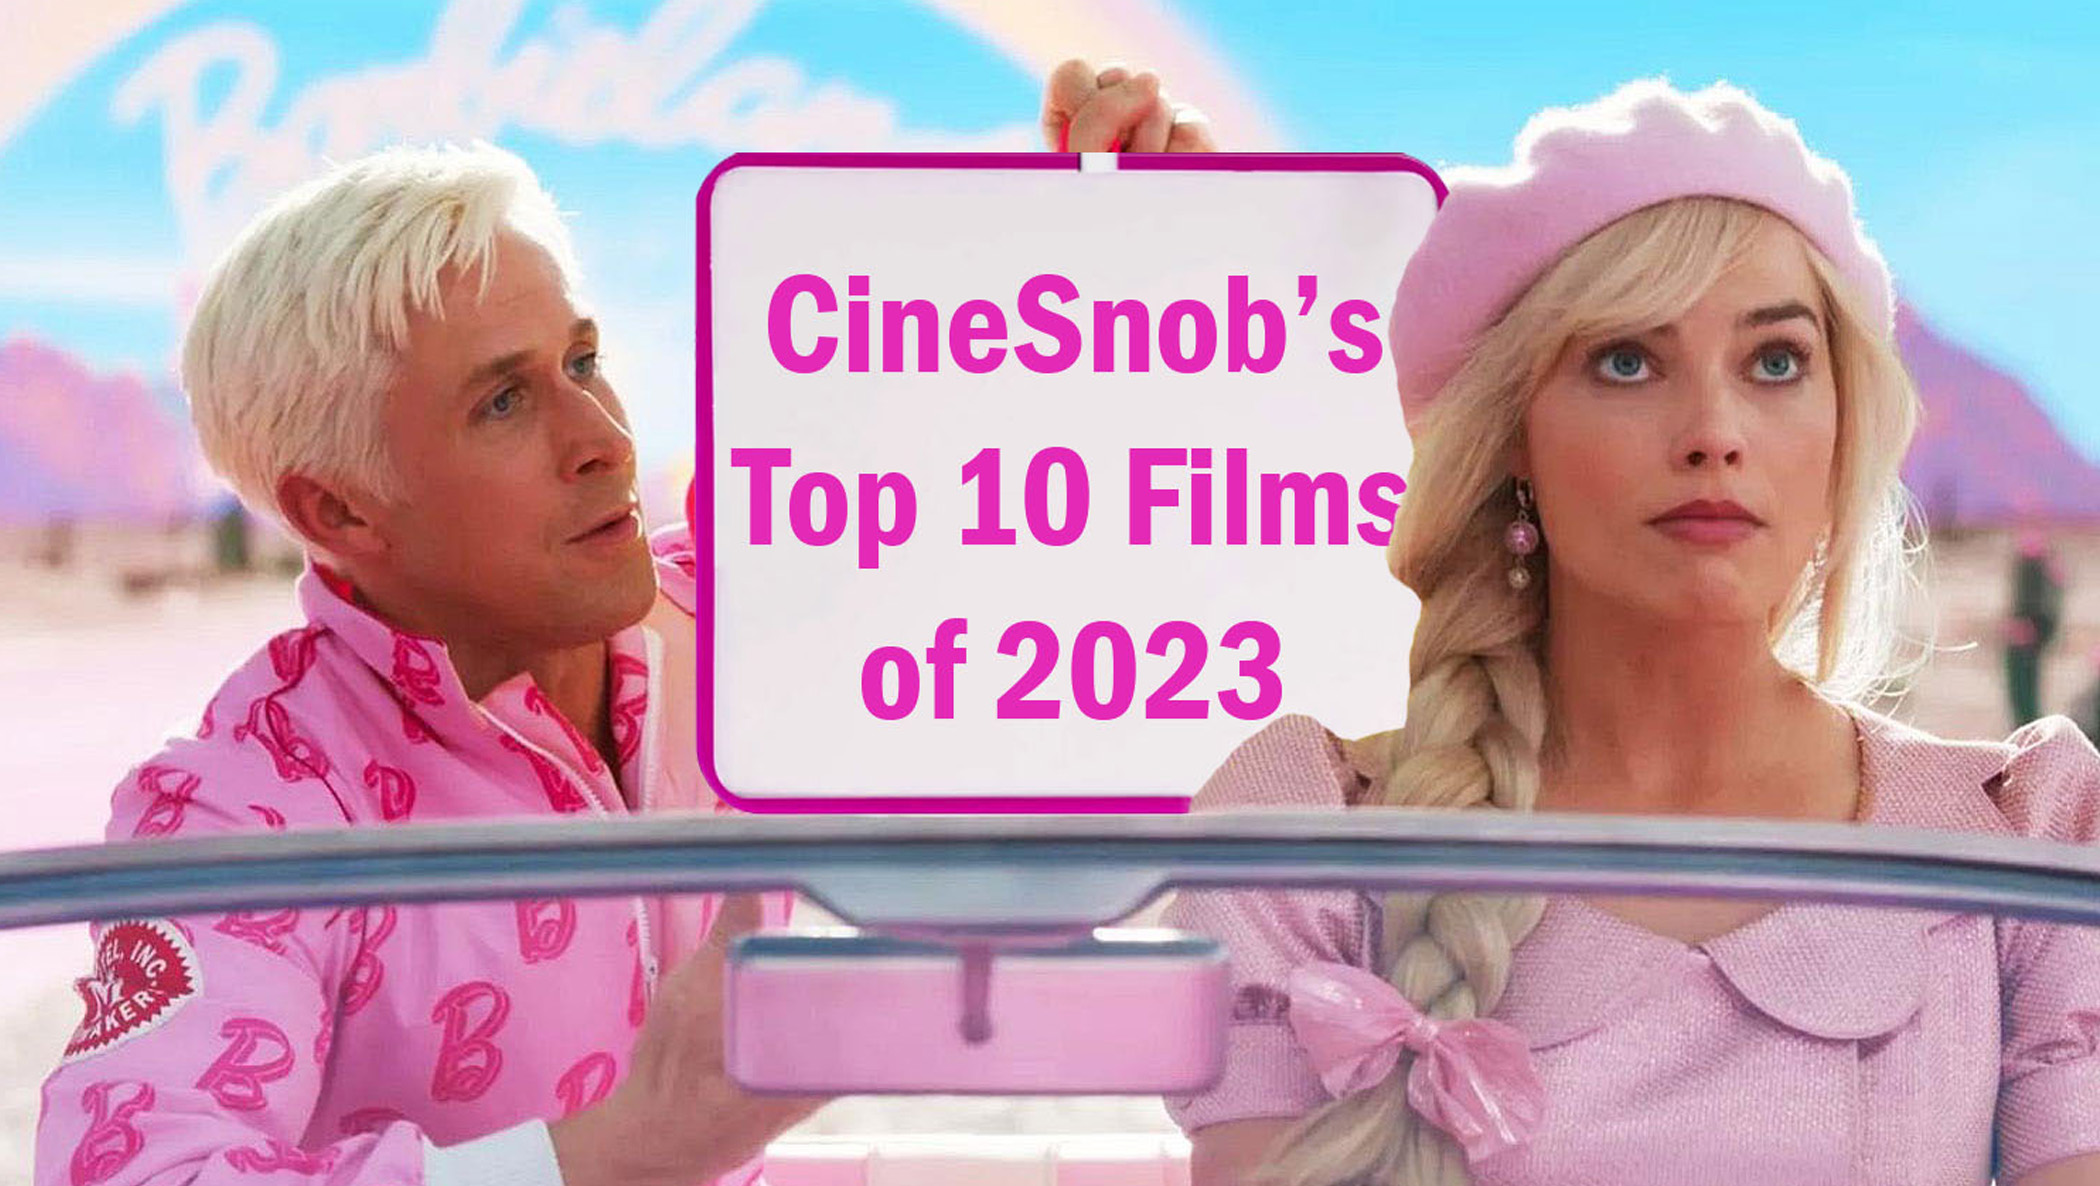 CineSnob's Top 10 Films of 2023